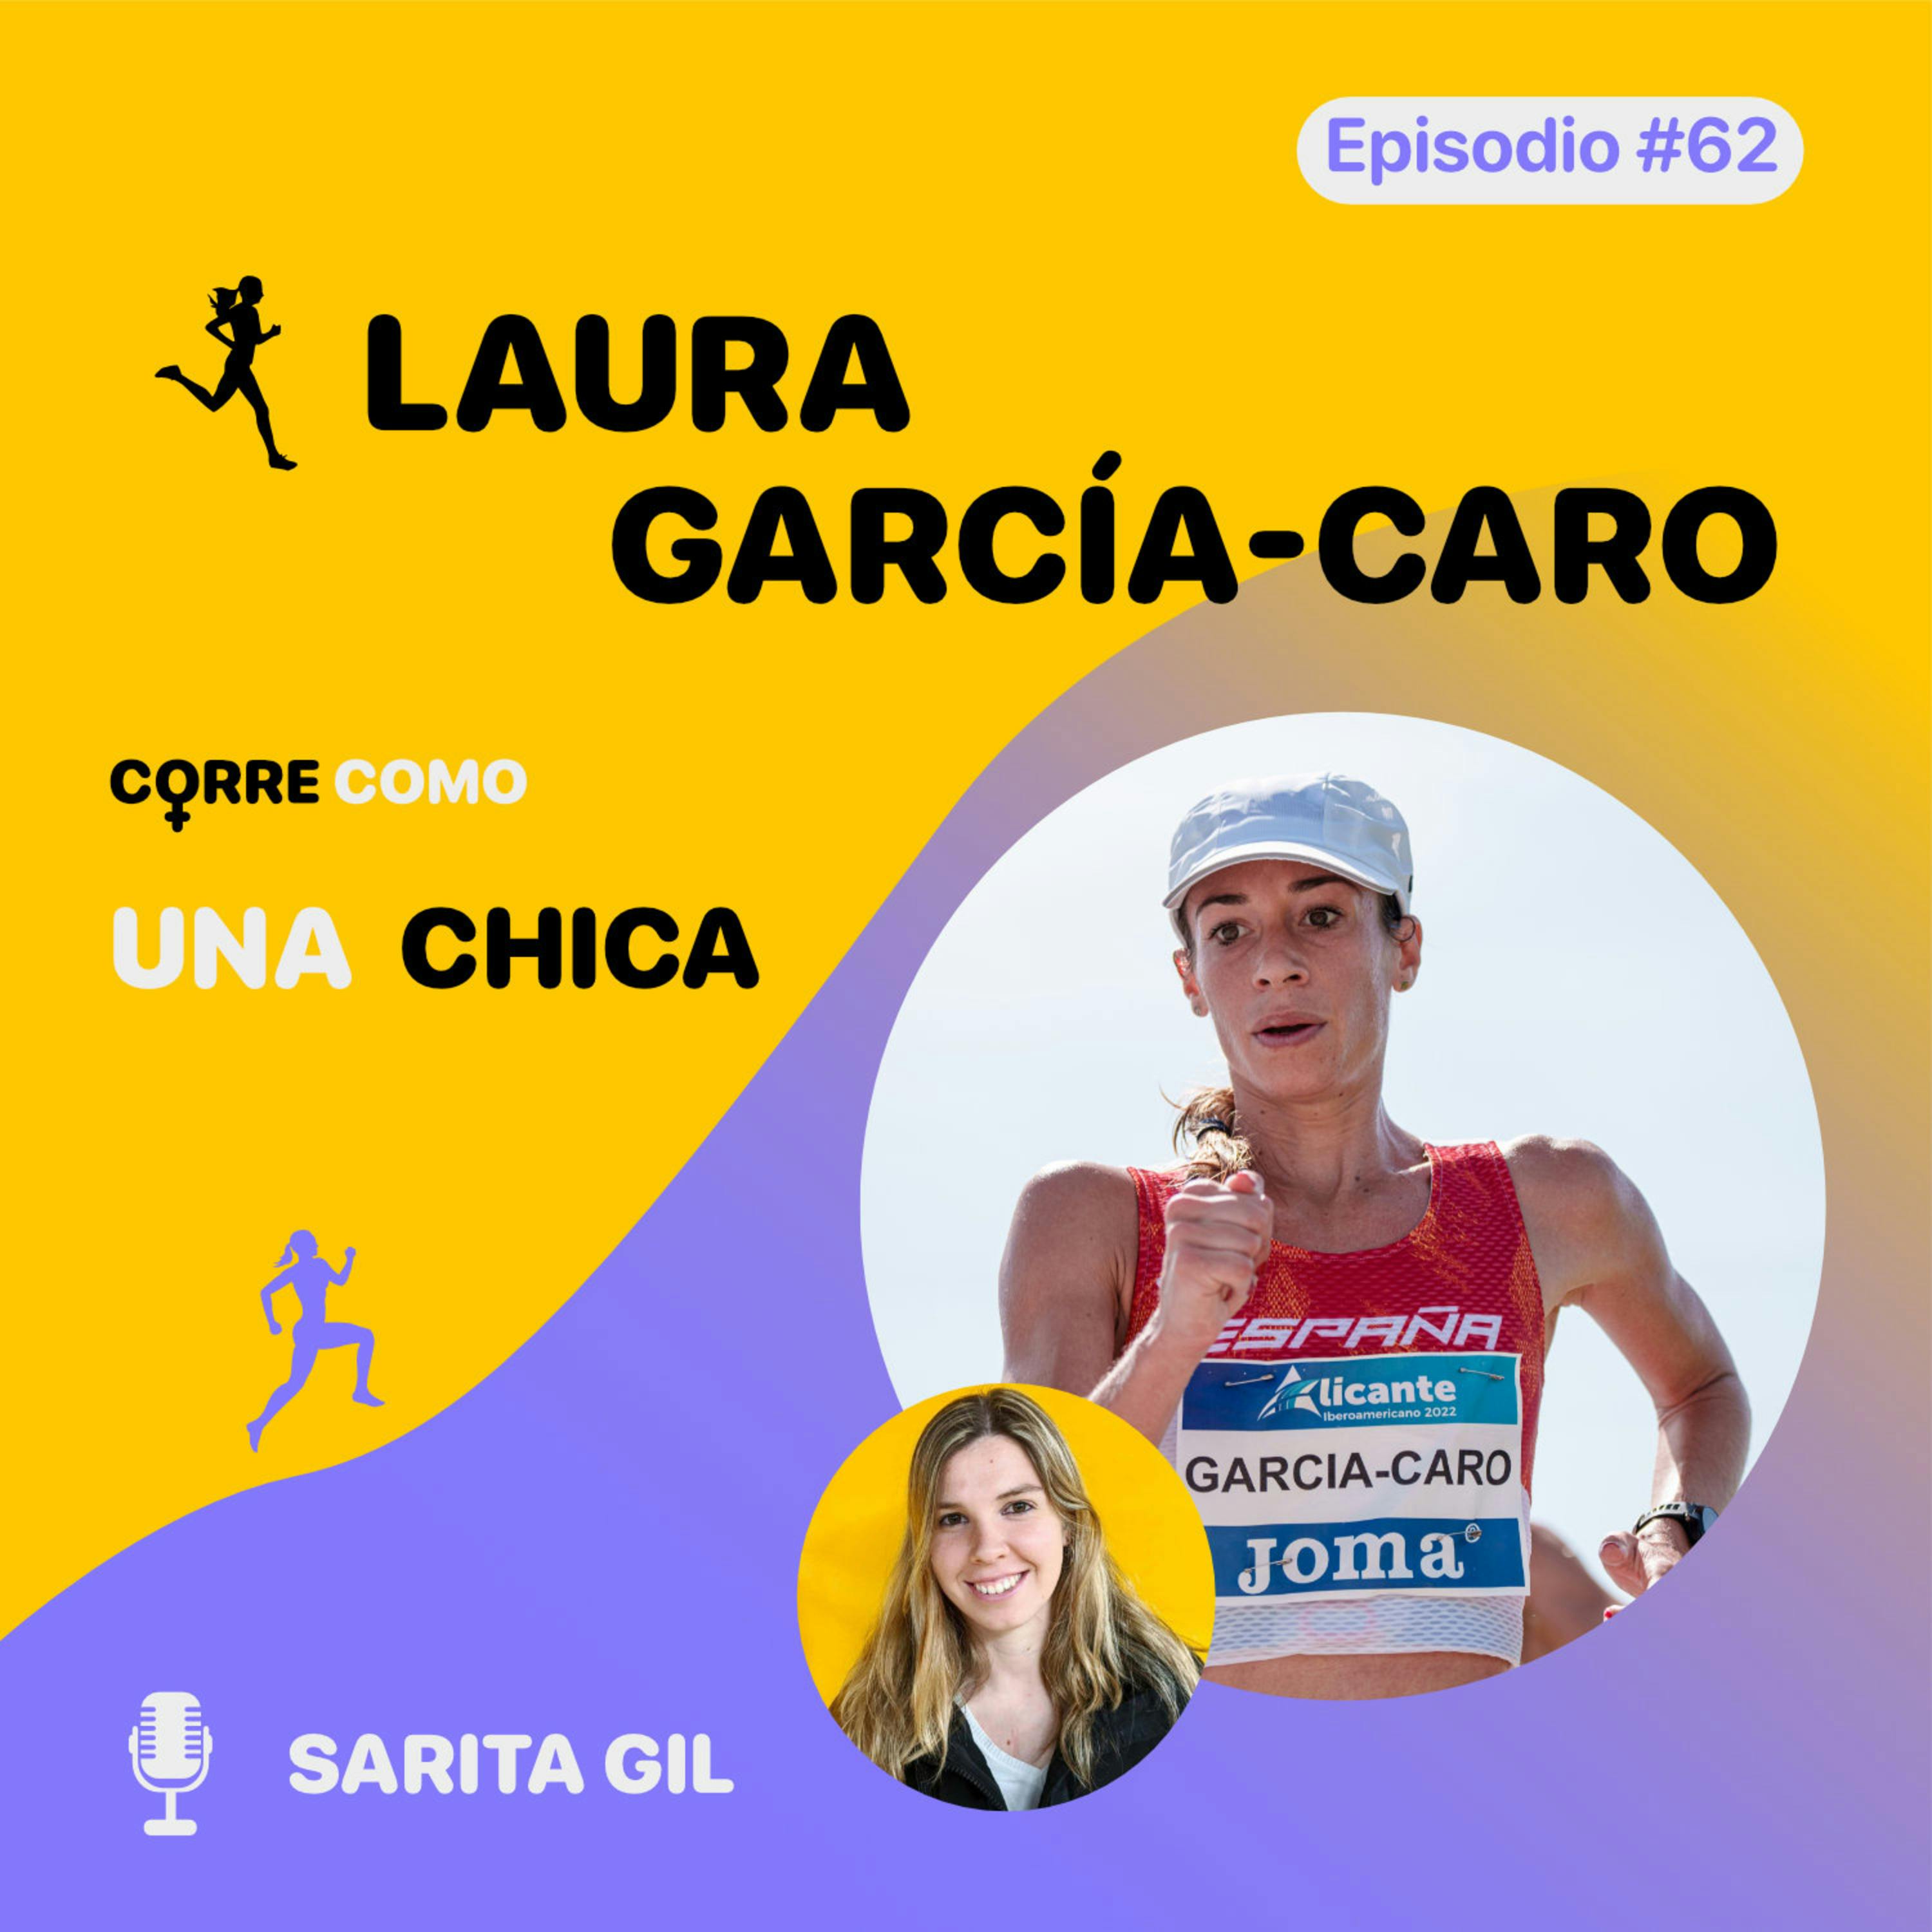 imagen de portada de: Episodio #62 - Laura García-Caro: "Marcha” 